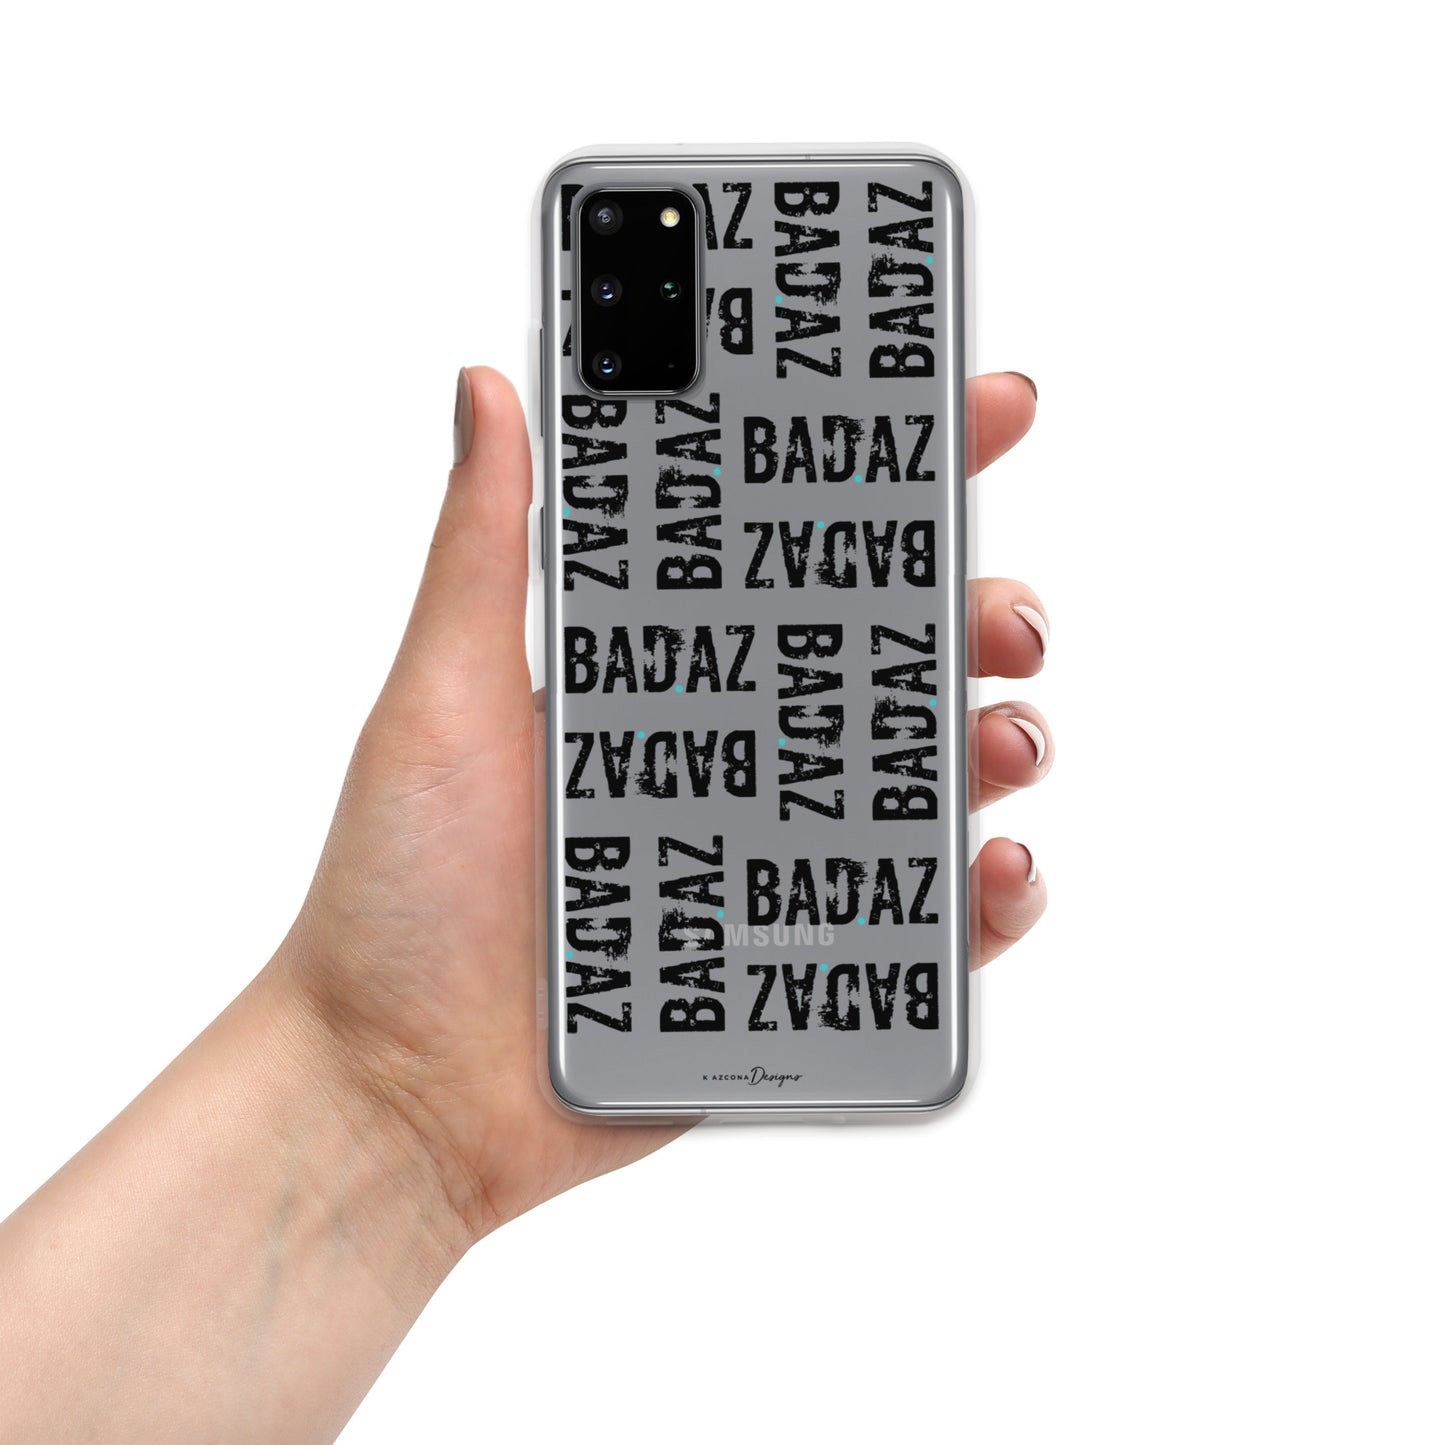 BAD.AZ Samsung Phone Case - Black